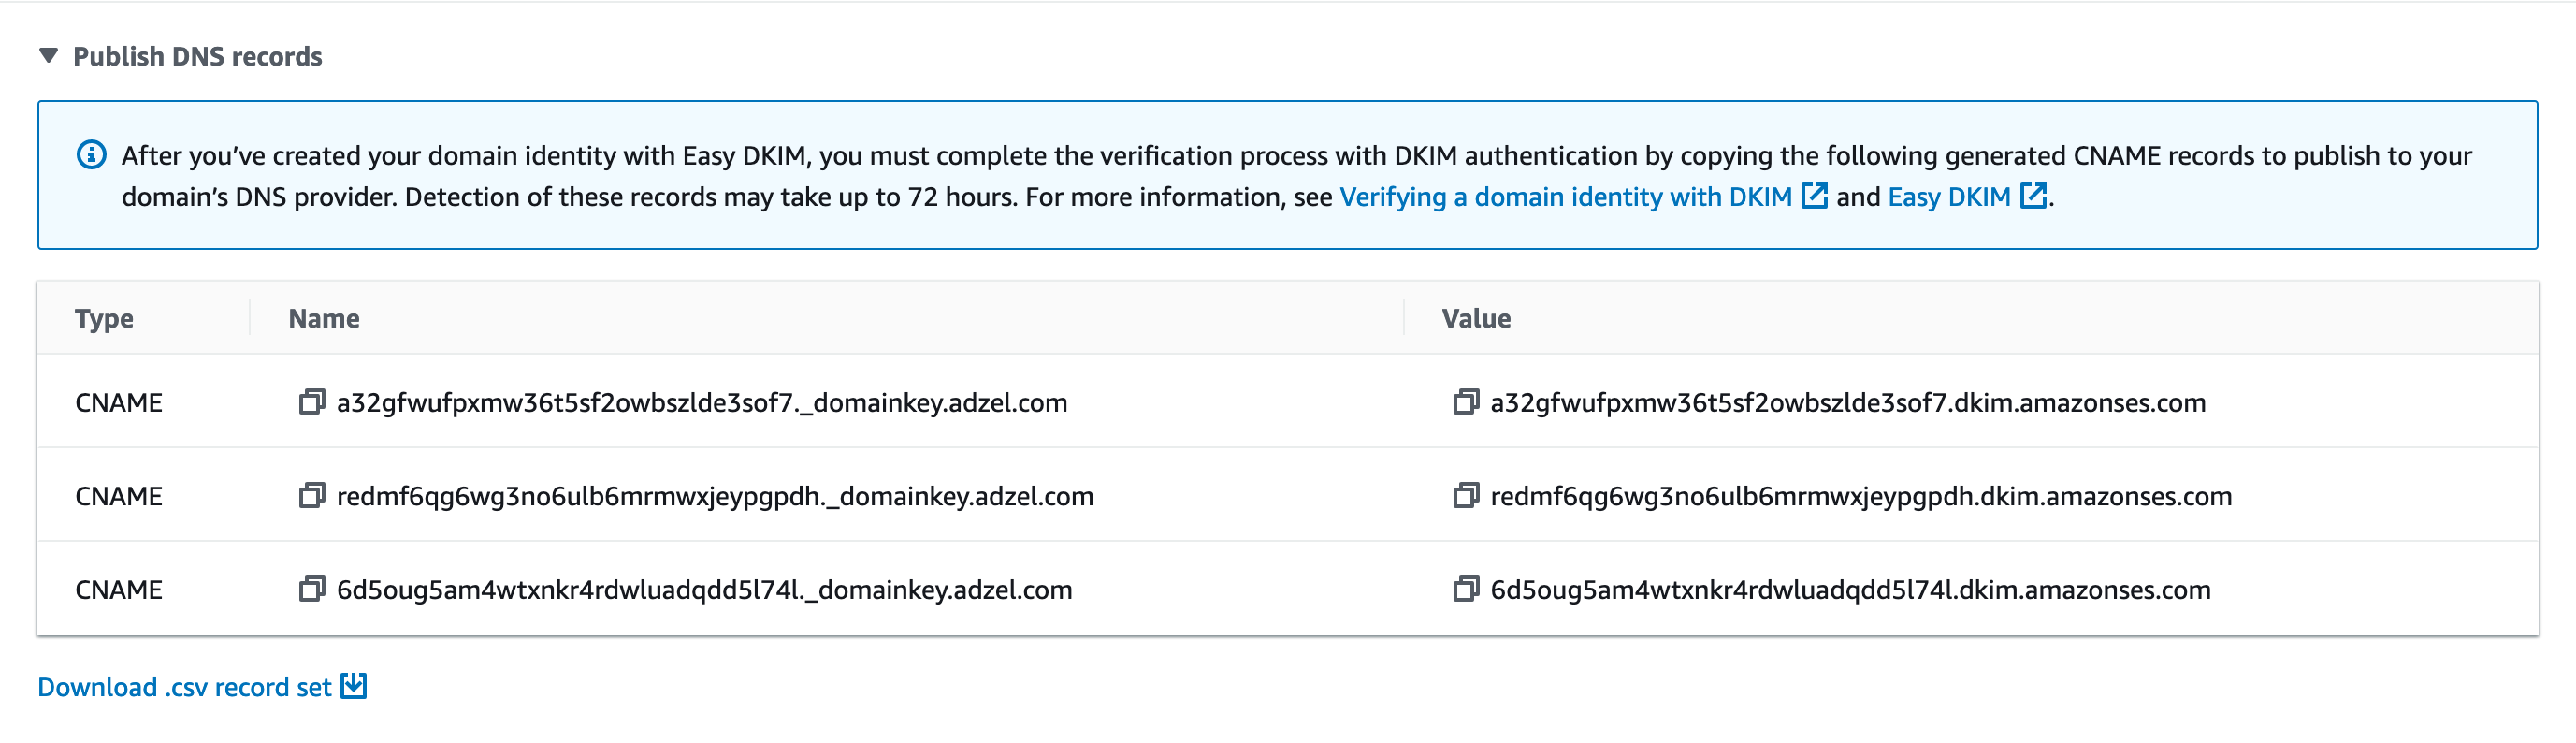 身份的详细信息页的 DKIM 部分。显示了三个虚构的 CNAME 记录。